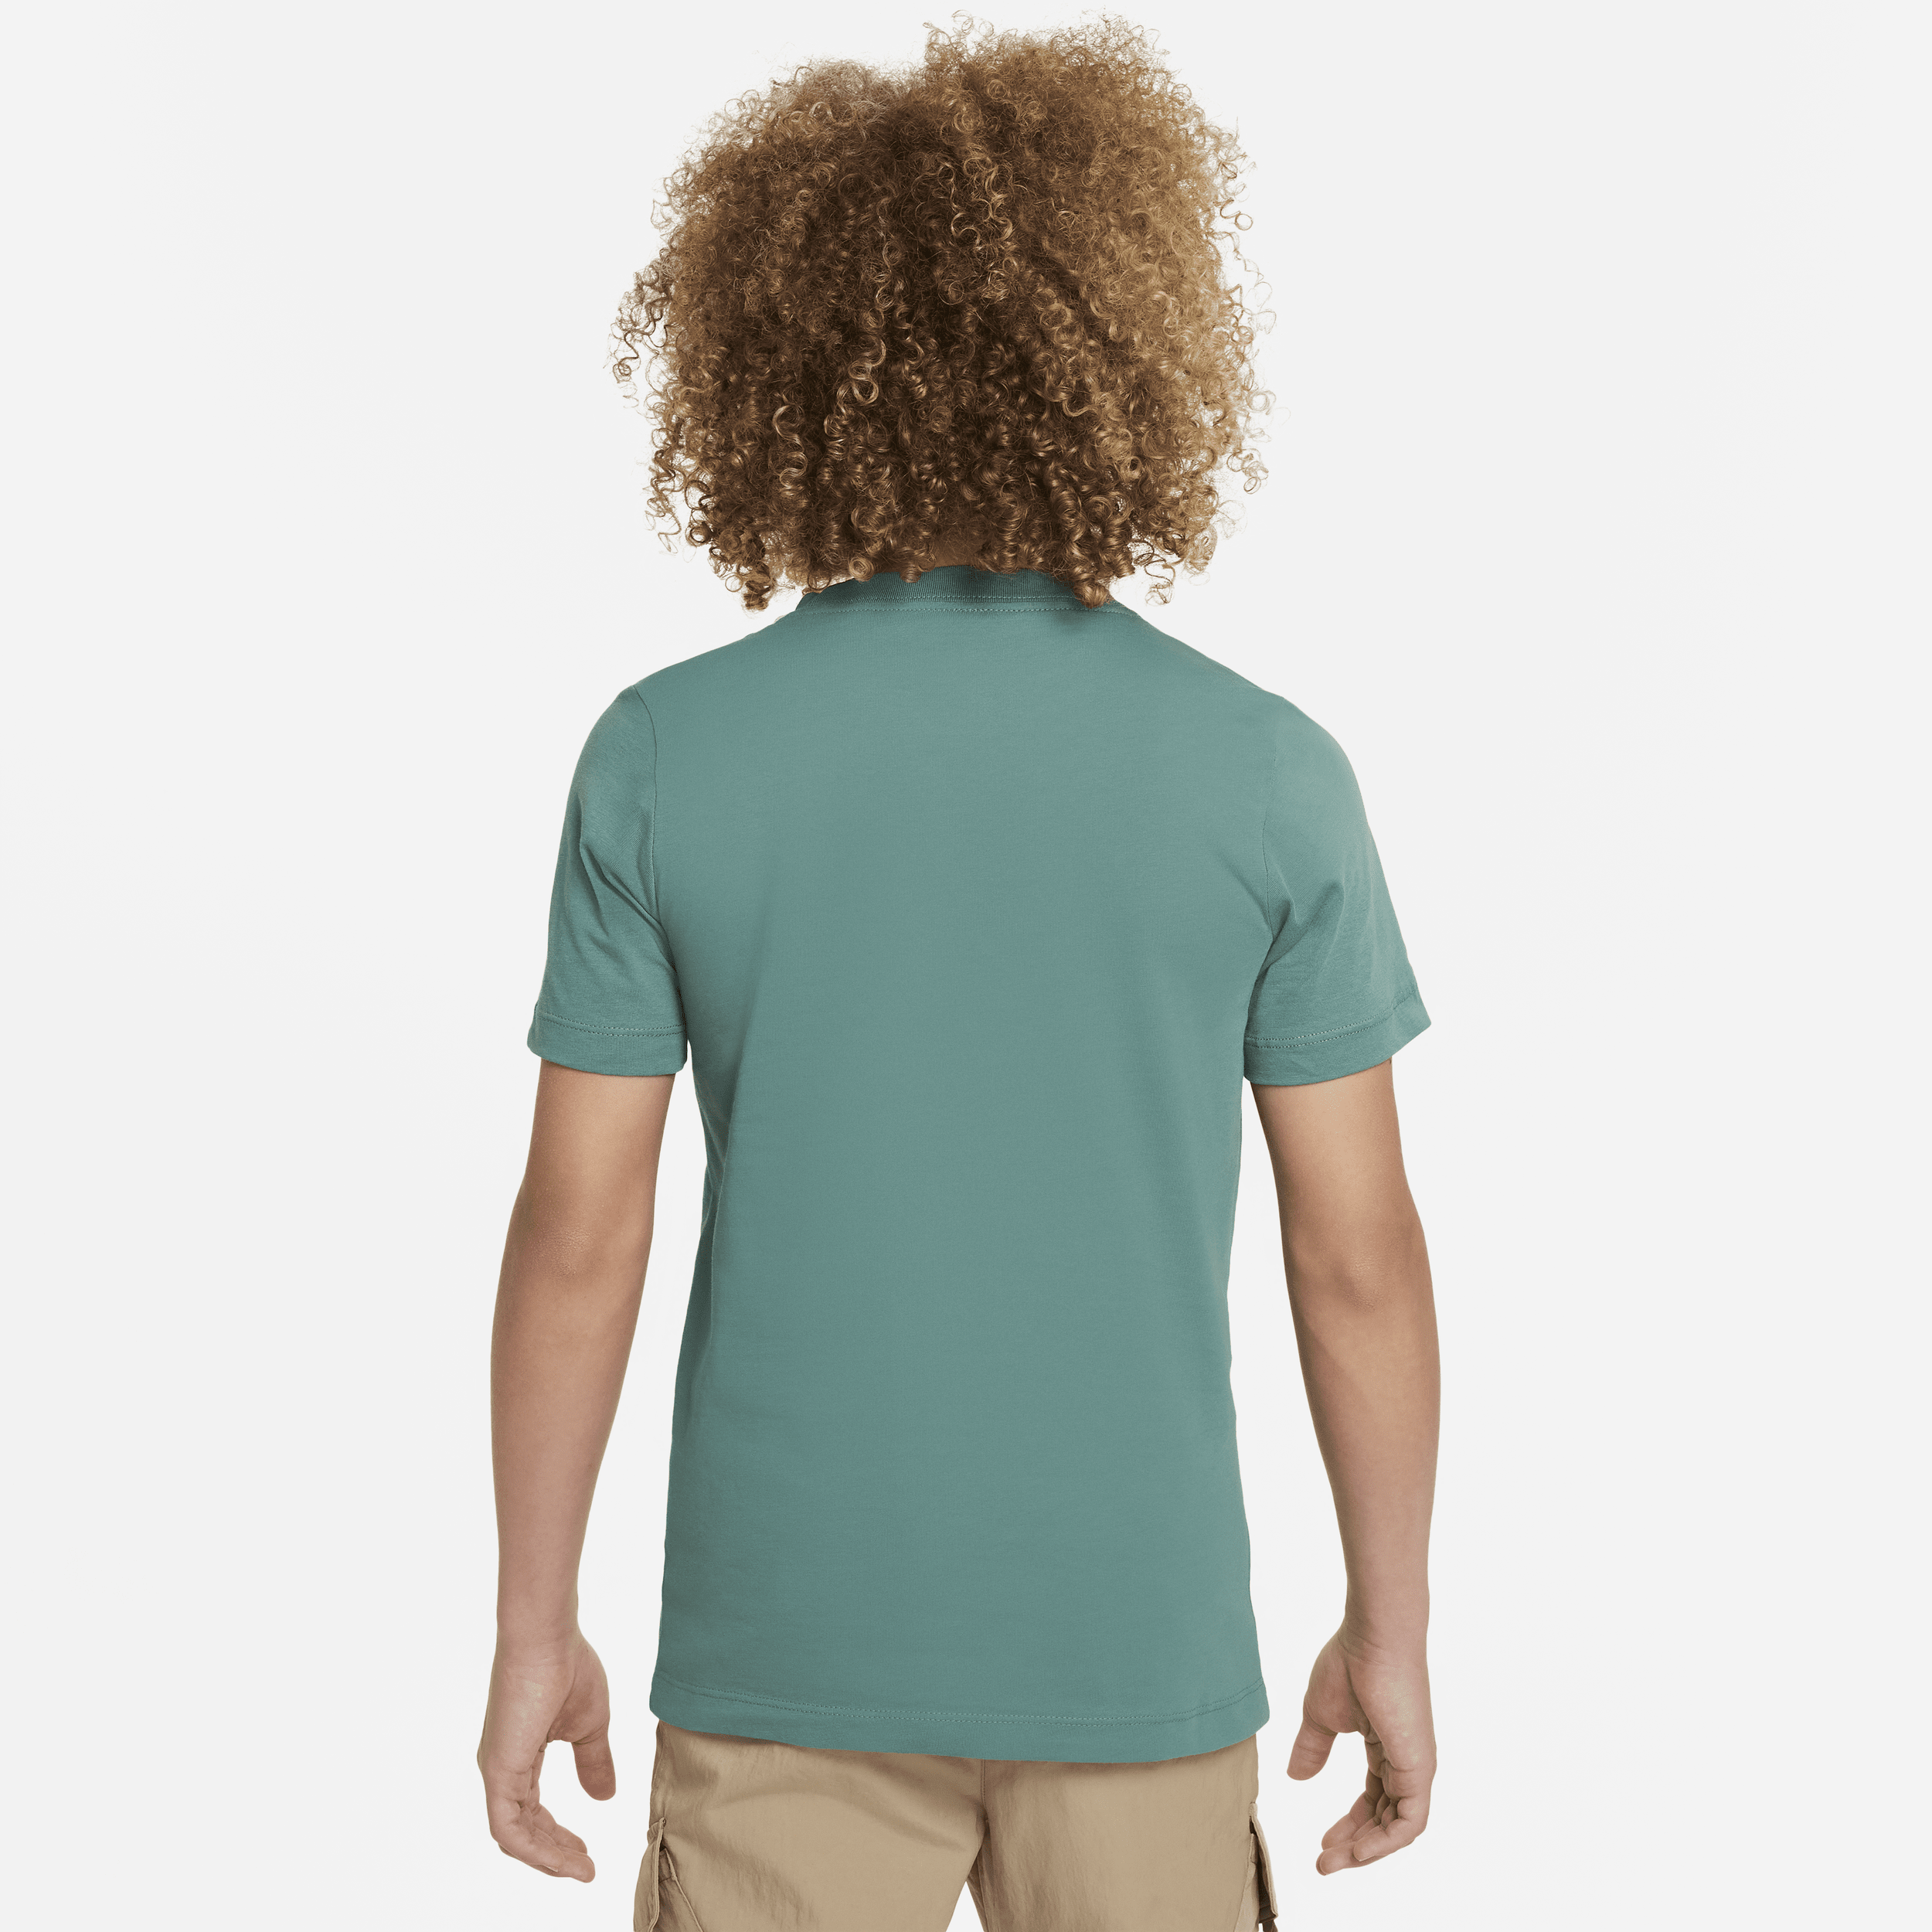 Nike Sportswear T-shirt voor kids Groen